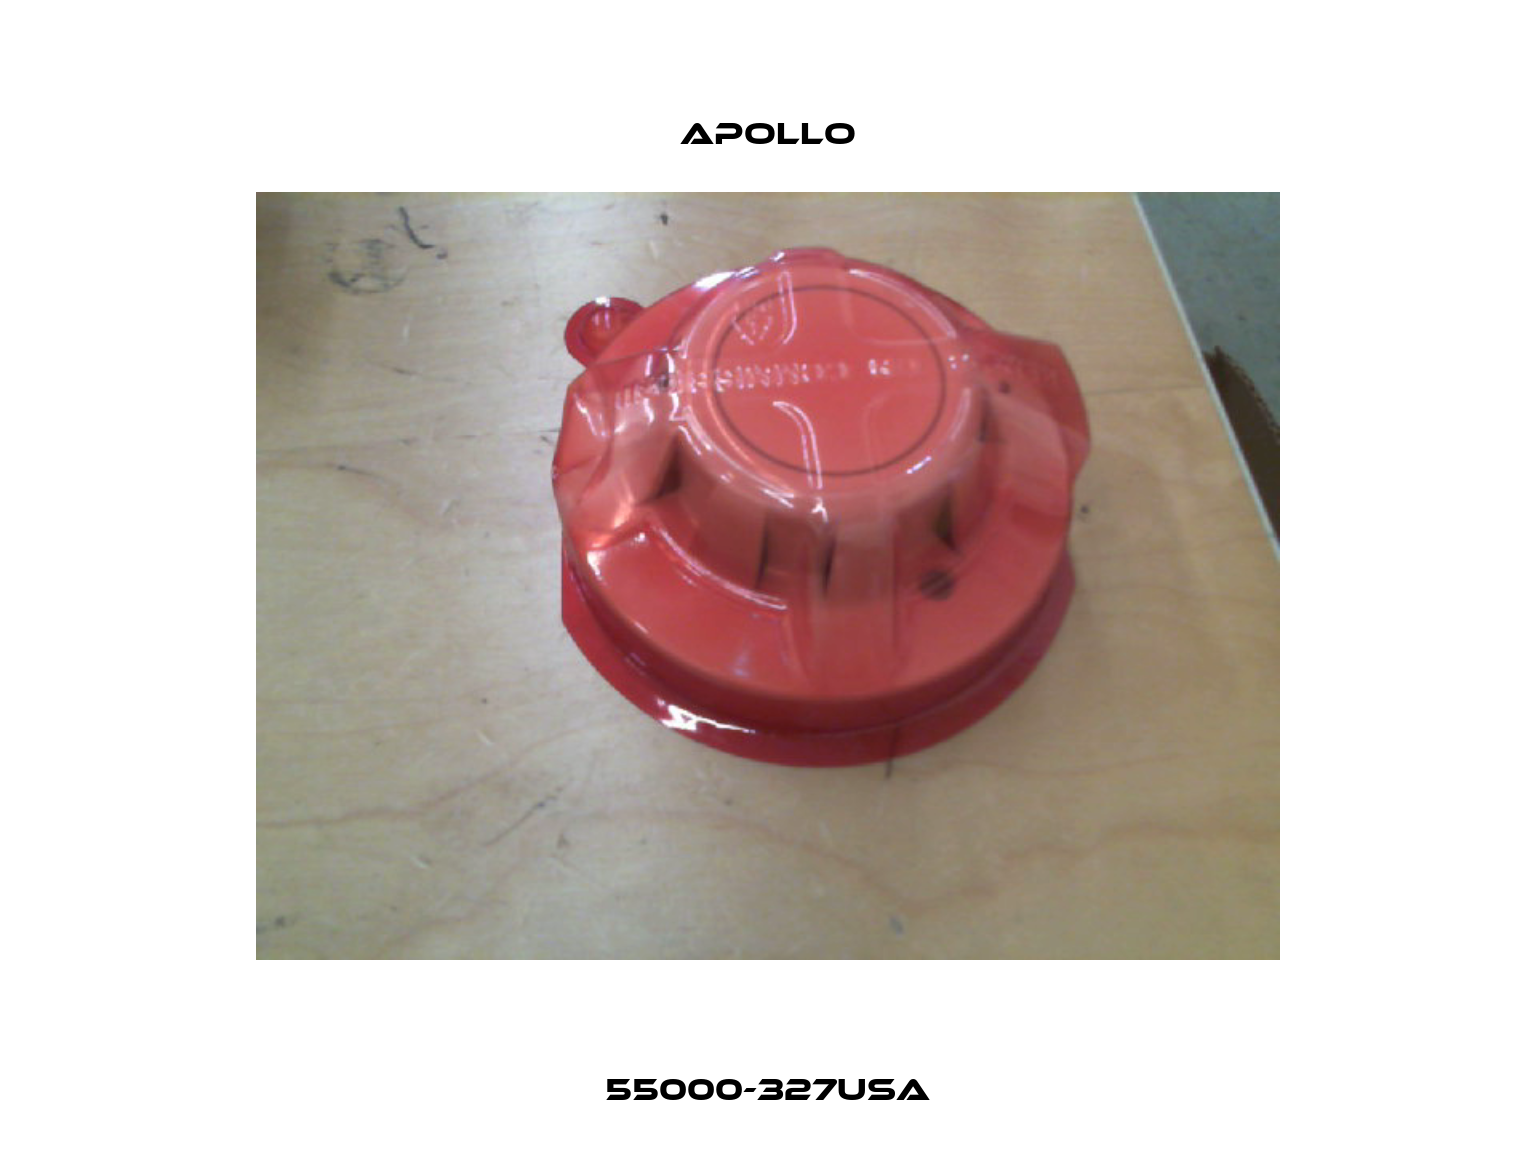 55000-327USA Apollo